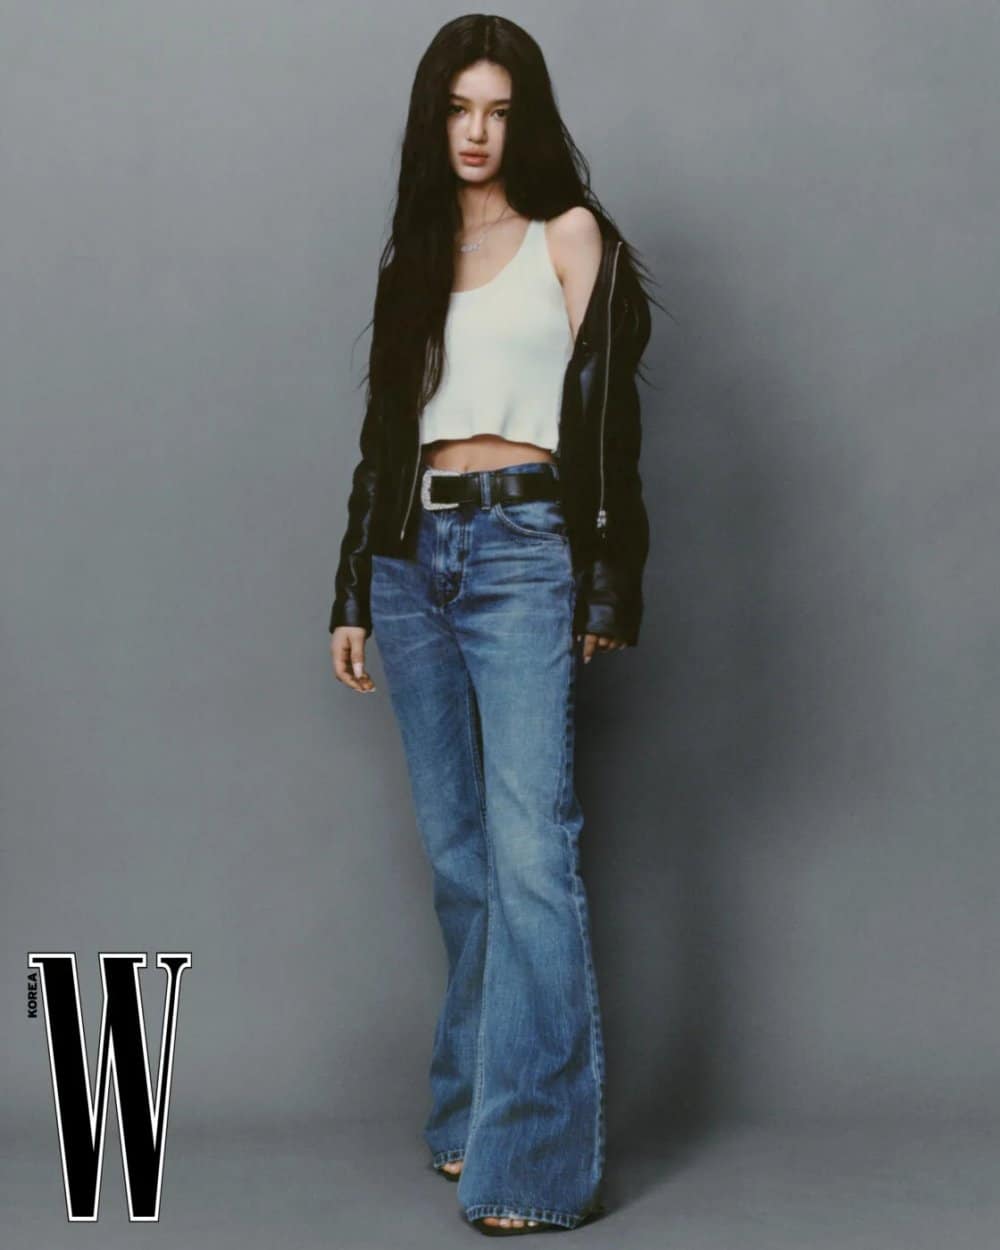 Потрясающая Даниэль из NewJeans в новой фотосессии Celine для W Korea